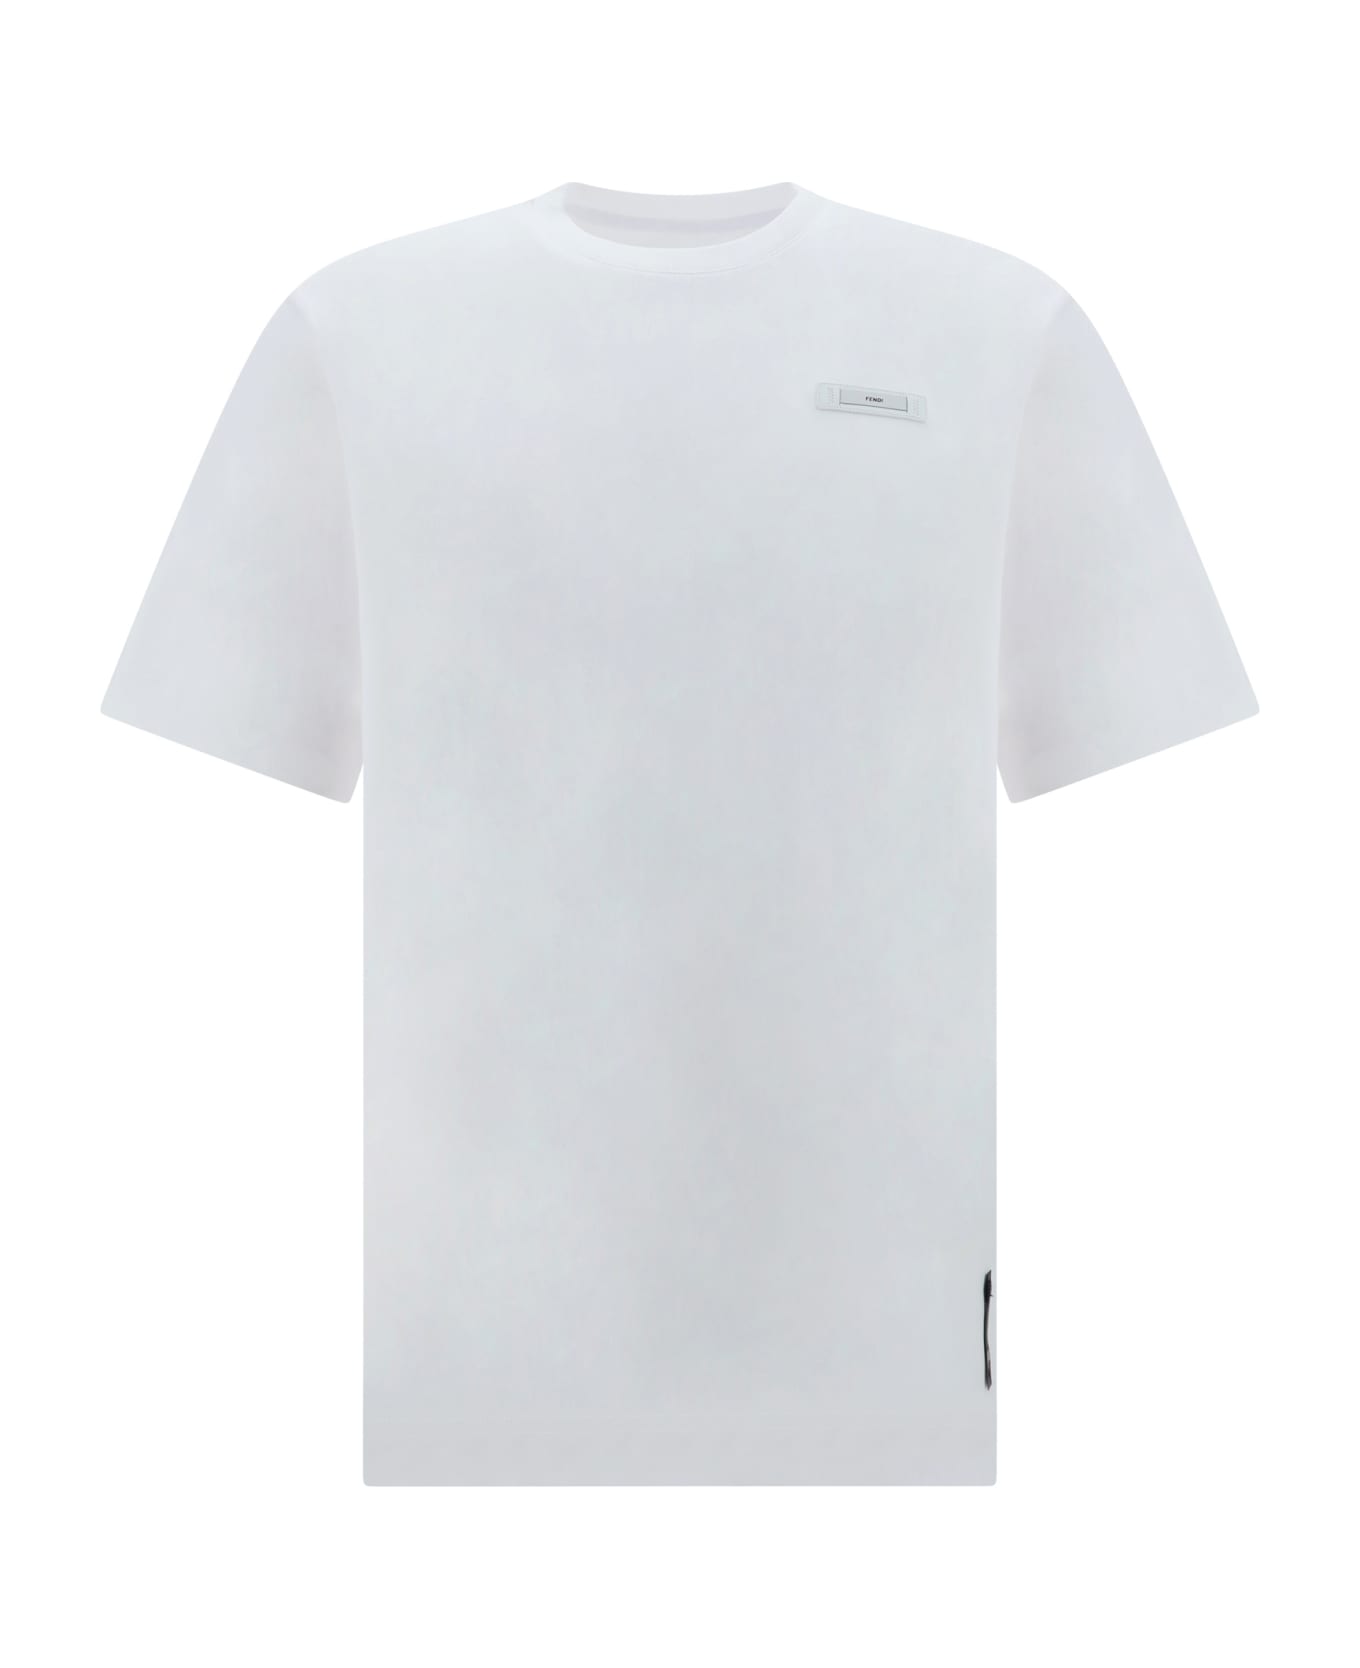 Fendi T-shirt - Bianco シャツ